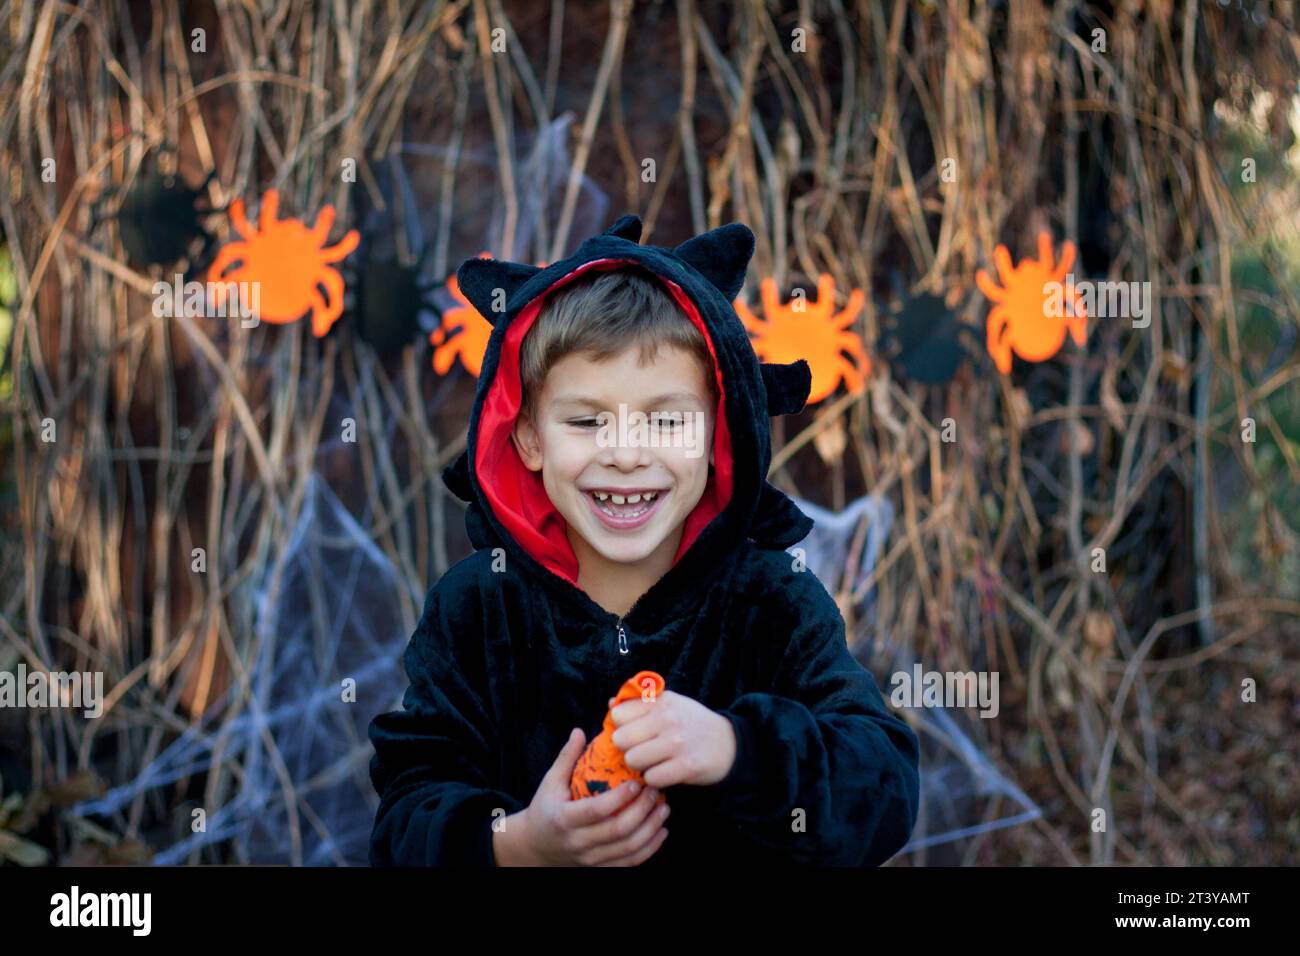 Frohes Halloween. Porträt des glücklichen Vorschuljungen im schwarzen Drachen-Faschingskostüm. Kind hat Spaß, Ballon aufblasen. Halloween-Party im Freien, Herbst Stockfoto